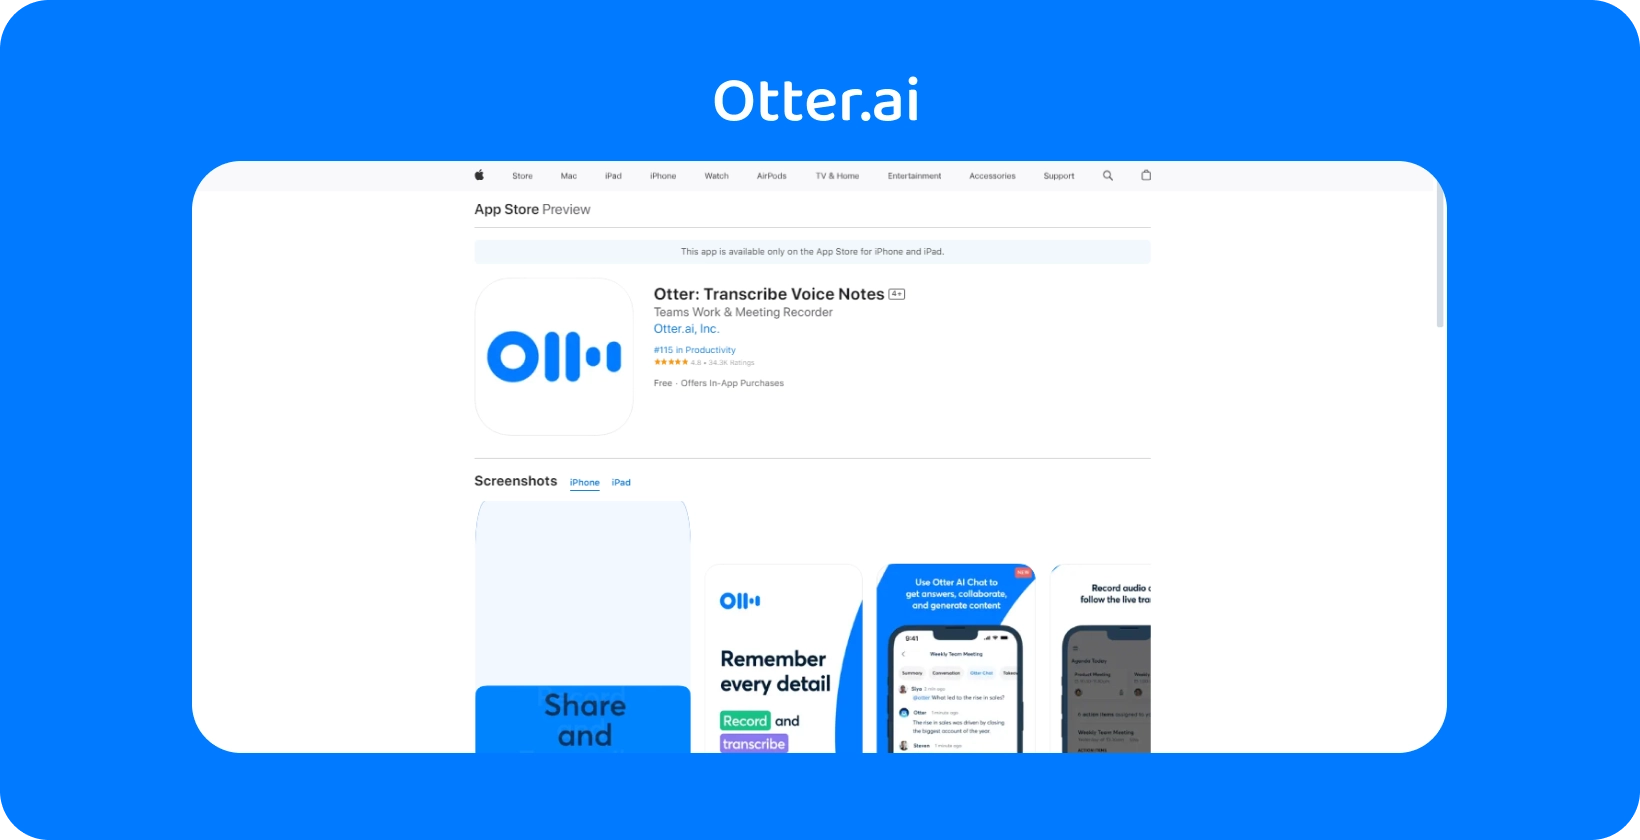 Otter.ai App Store Vorschau, in der die Transkriptions- und Sprachnotizfunktionen der Anwendung auf iPhone vorgestellt werden.